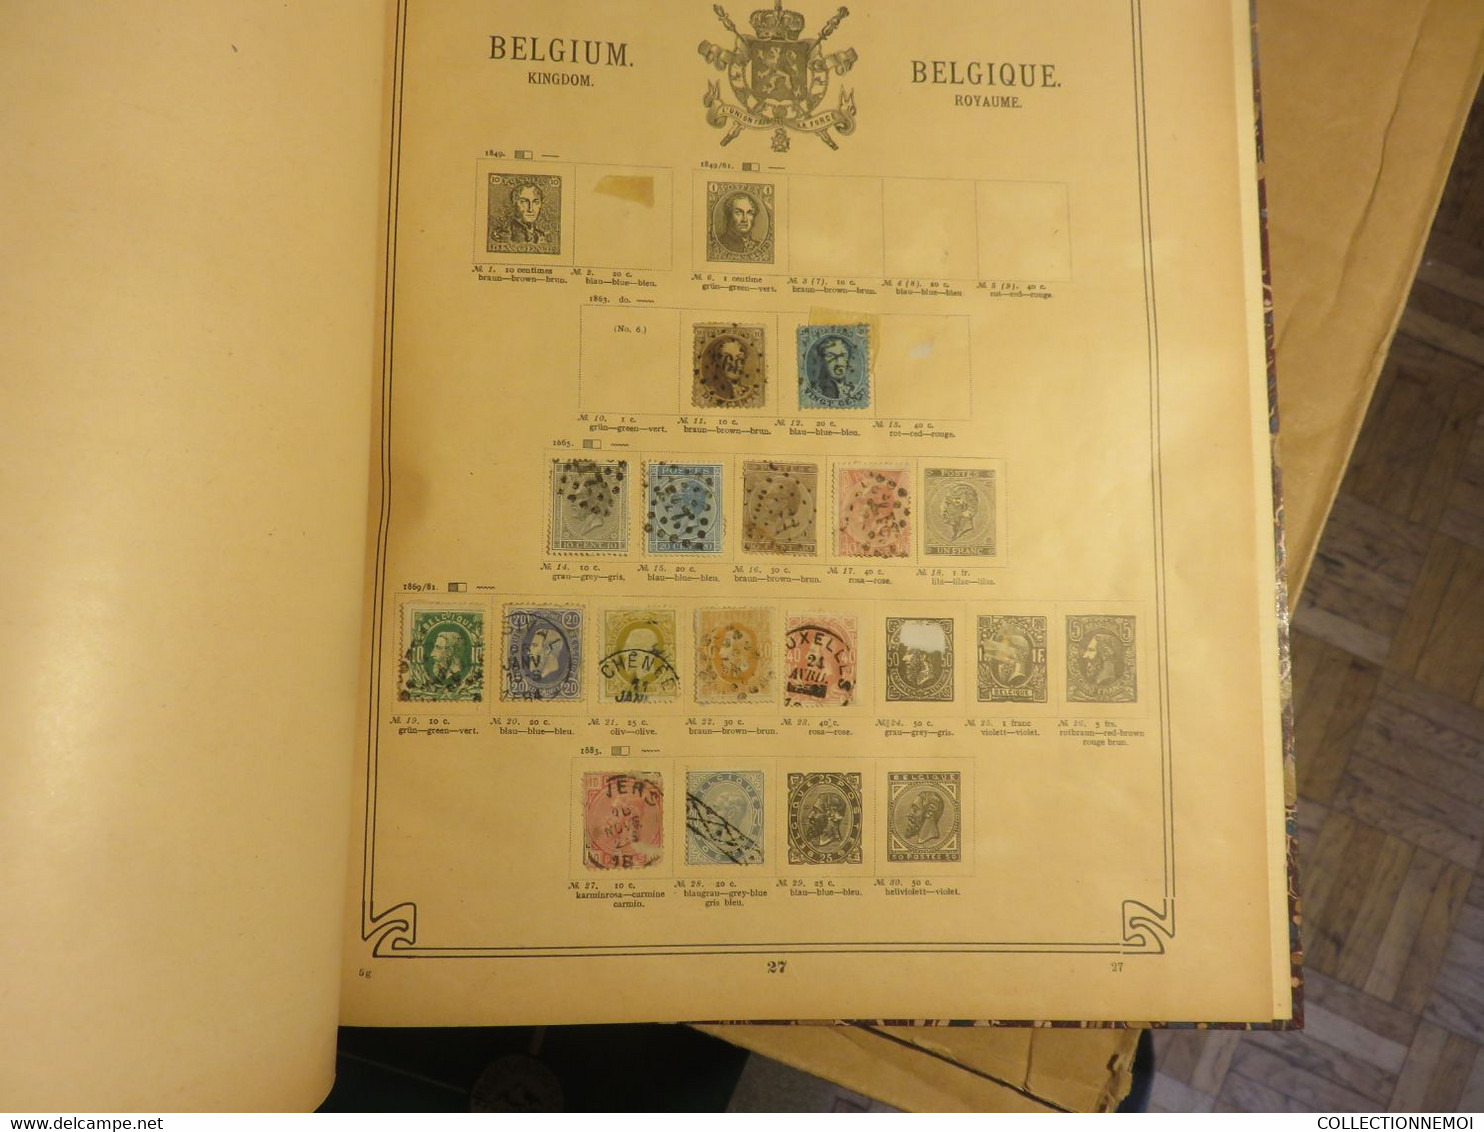 1 VRAC de timbres de moins de 30 kilos ,,, en une quinzaine de classeurs et divers en vrac ,,LIRE DESCRIPTION